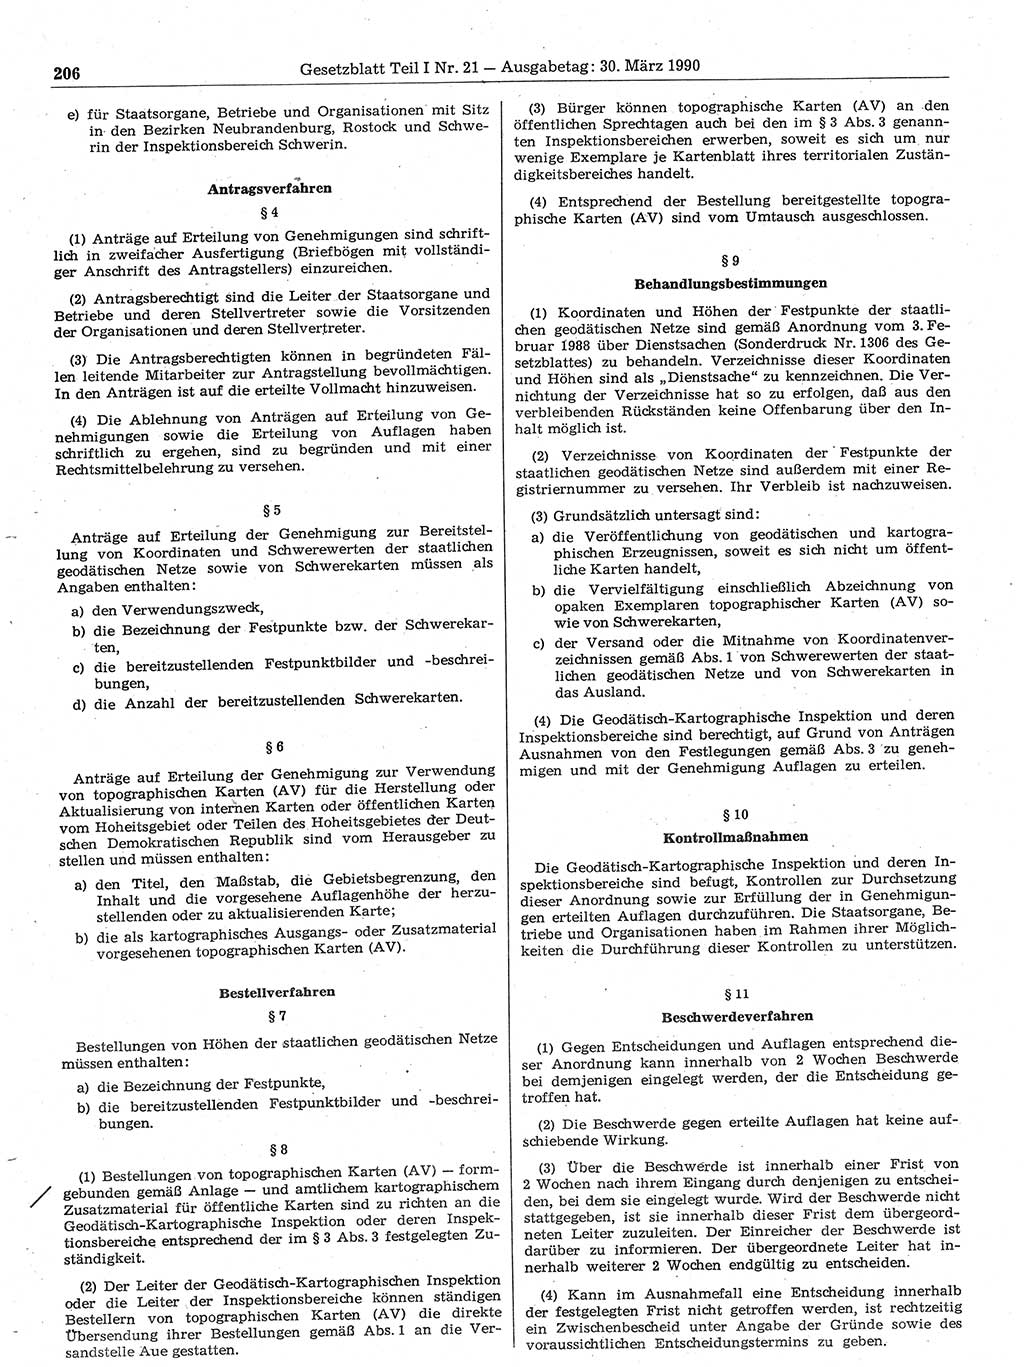 Gesetzblatt (GBl.) der Deutschen Demokratischen Republik (DDR) Teil Ⅰ 1990, Seite 206 (GBl. DDR Ⅰ 1990, S. 206)